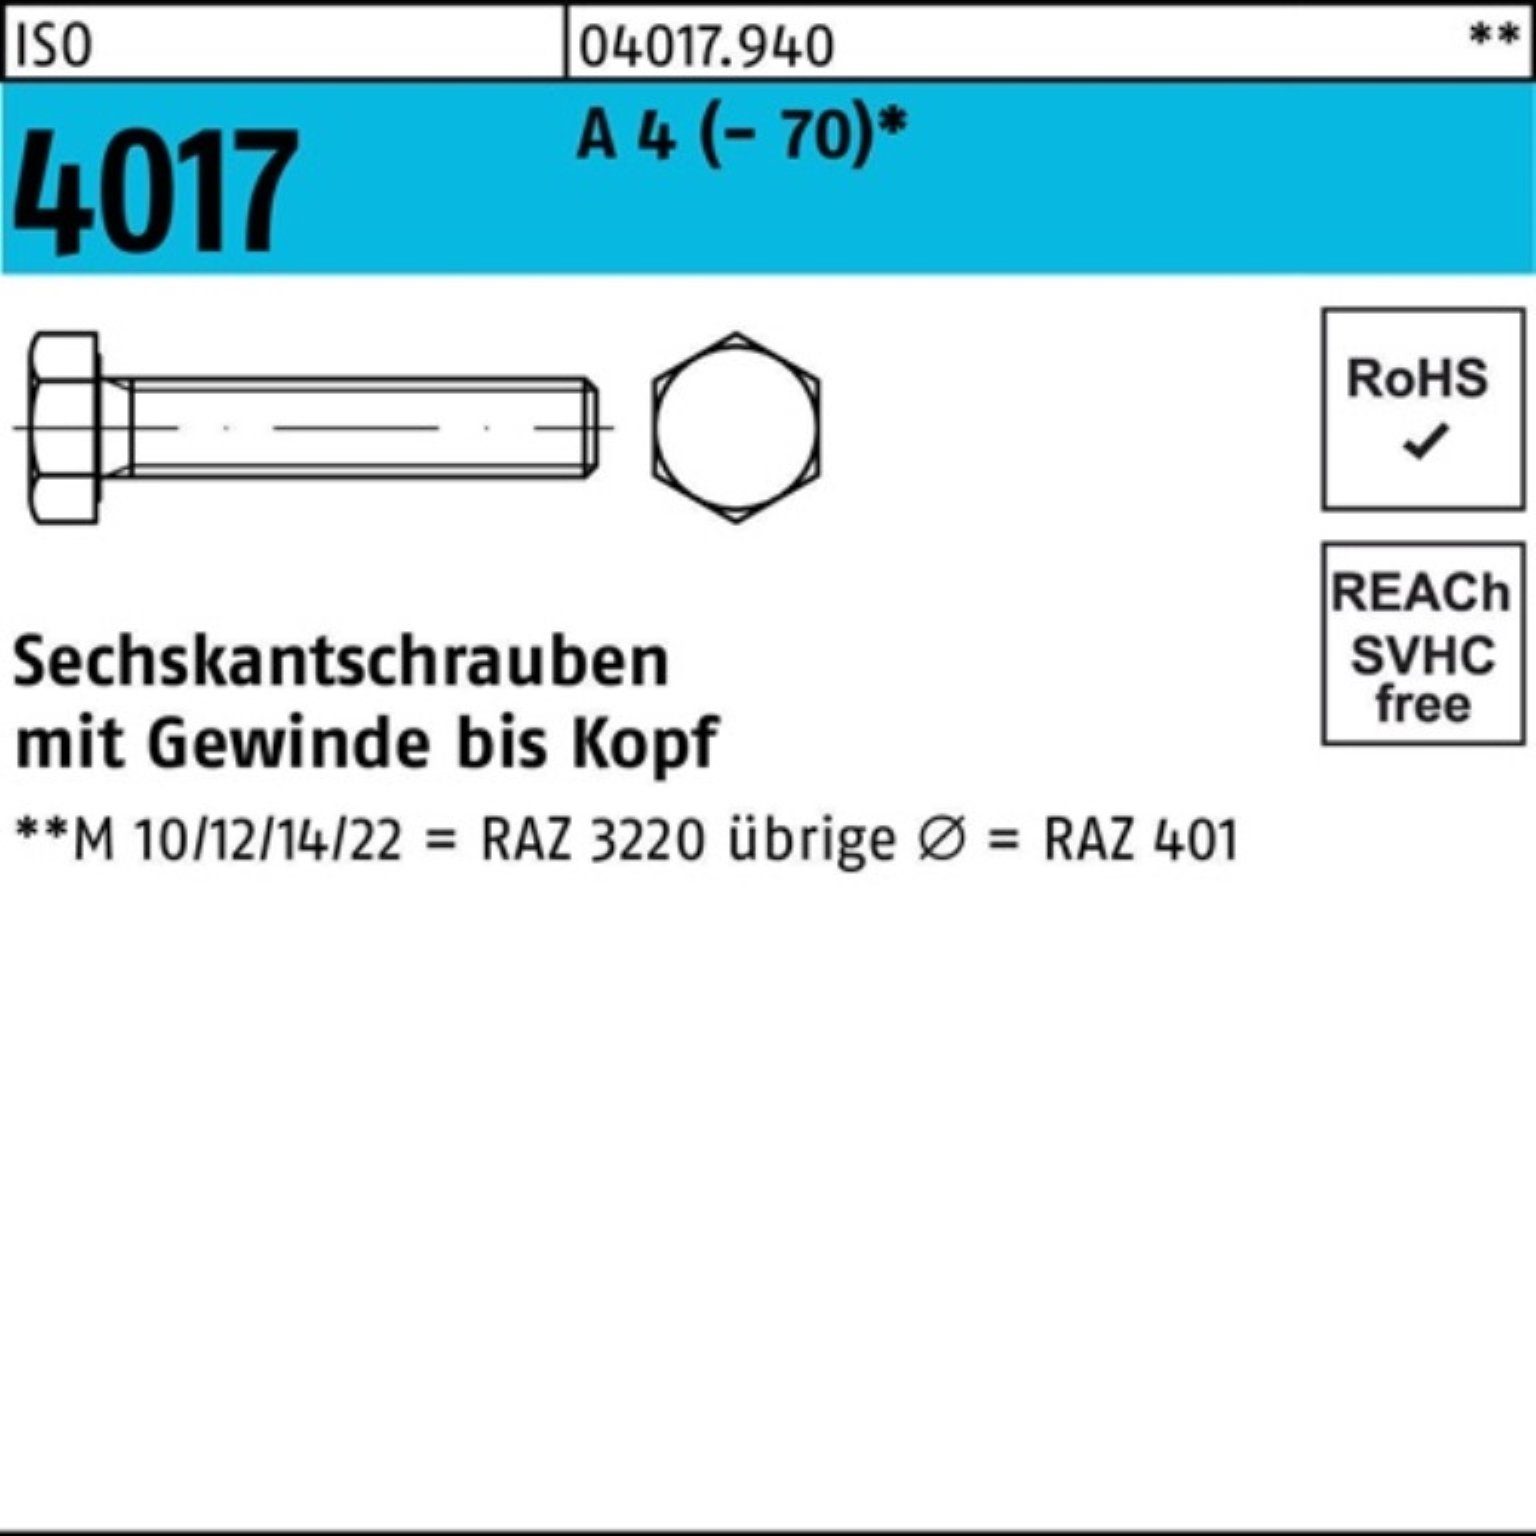 VG Sechskantschraube Bufab 160 Pack Stück 4 ISO (70) Sechskantschraube 4017 M20x A 100er 1